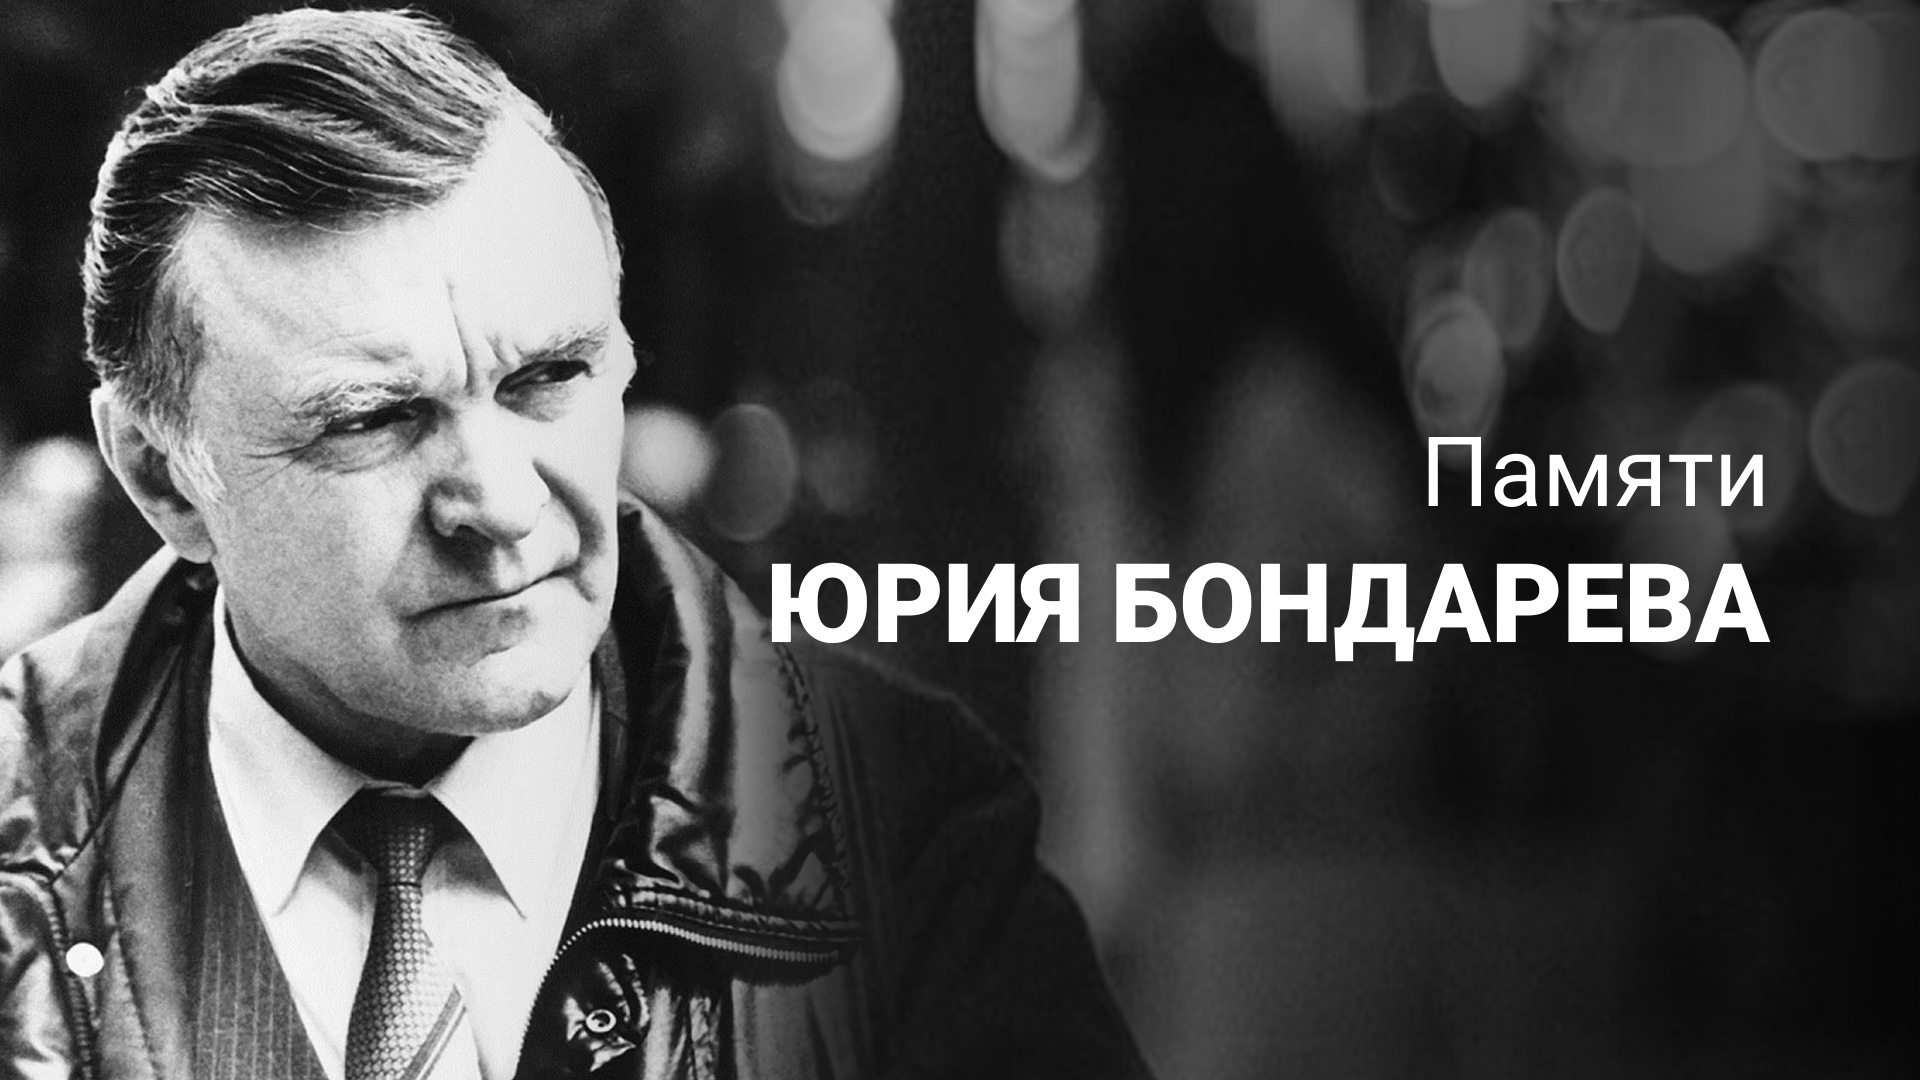 К 100 летию юрия бондарева. Бондарев писатель фронтовик.